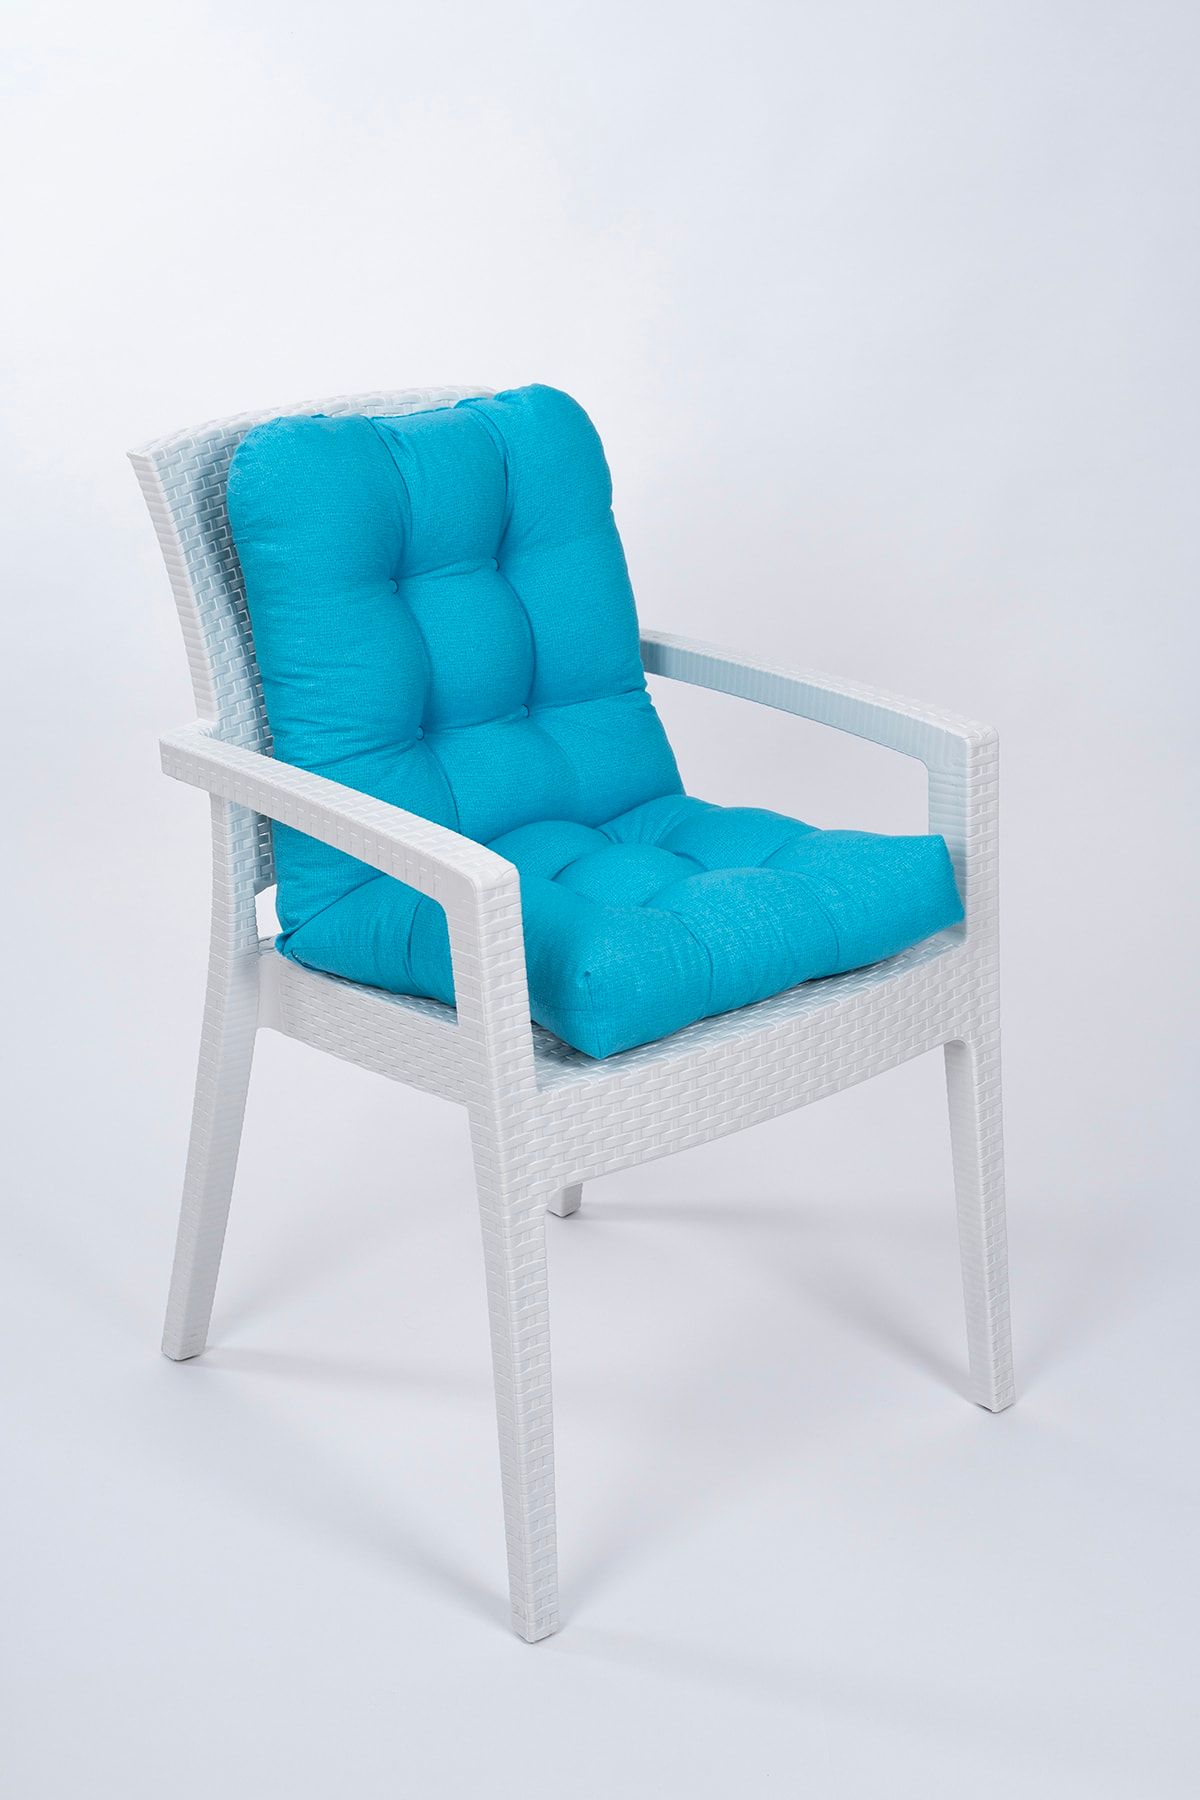 ALTINPAMUK Candy Pofidik Arkalıklı Turkuaz Sandalye Minderi Özel Dikişli Bağcıklı 43x88 Cm